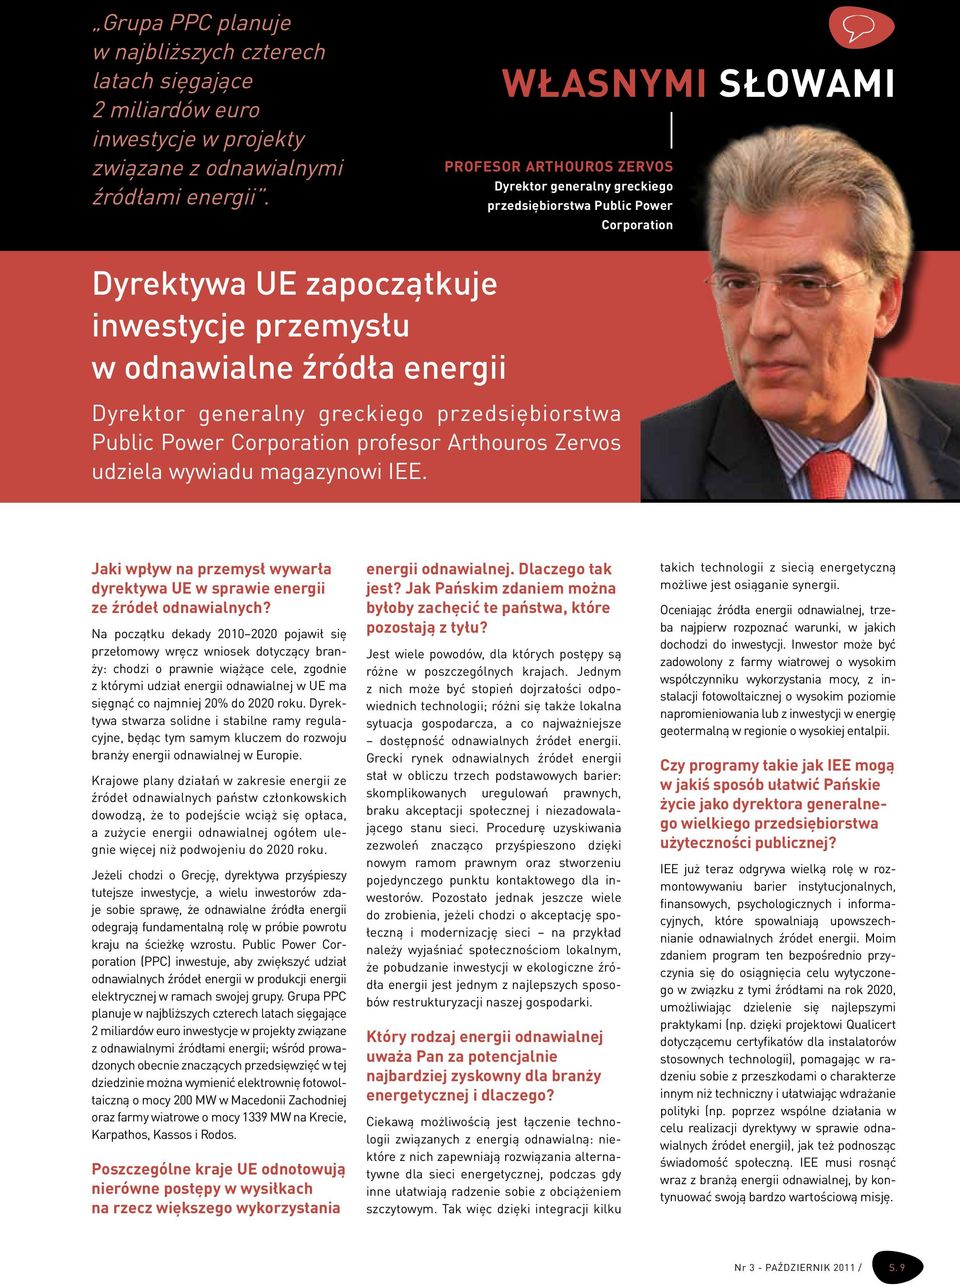 generalny greckiego przedsiębiorstwa Public Power Corporation profesor Arthouros Zervos udziela wywiadu magazynowi IEE.